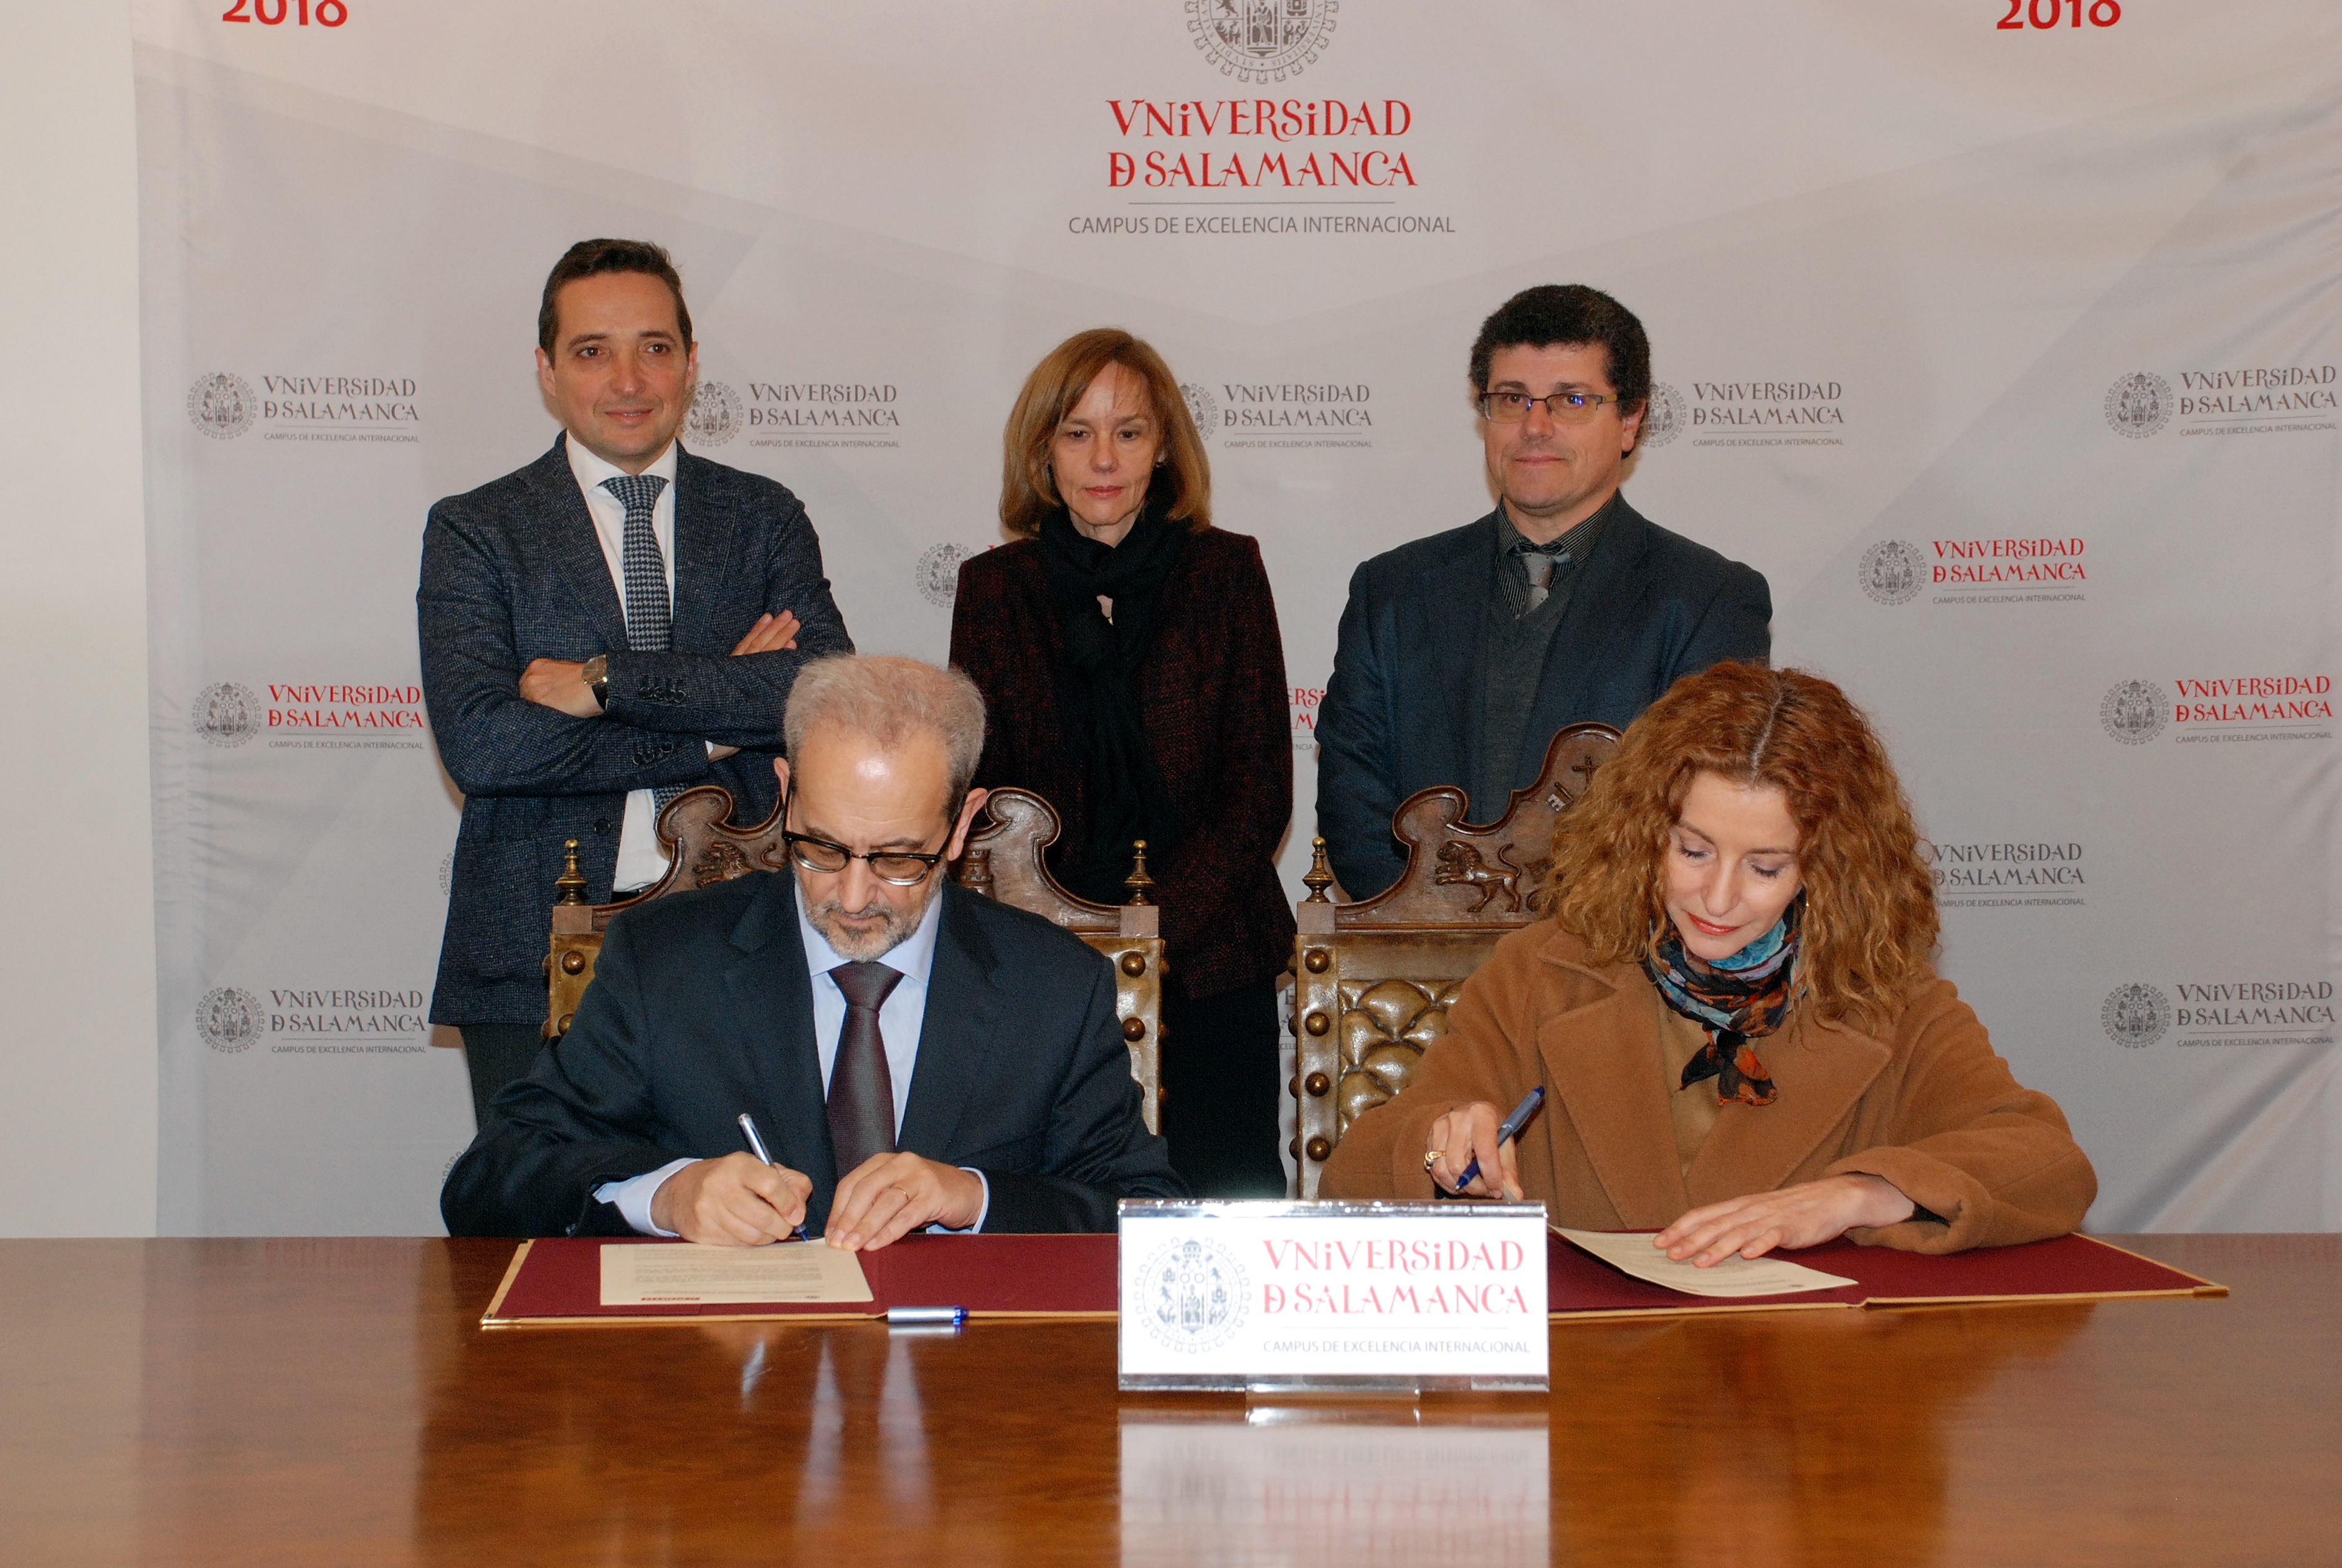 La Universidad de Salamanca y el Instituto Politécnico de Oporto colaborarán en el Doctorado en Ingeniería Informática